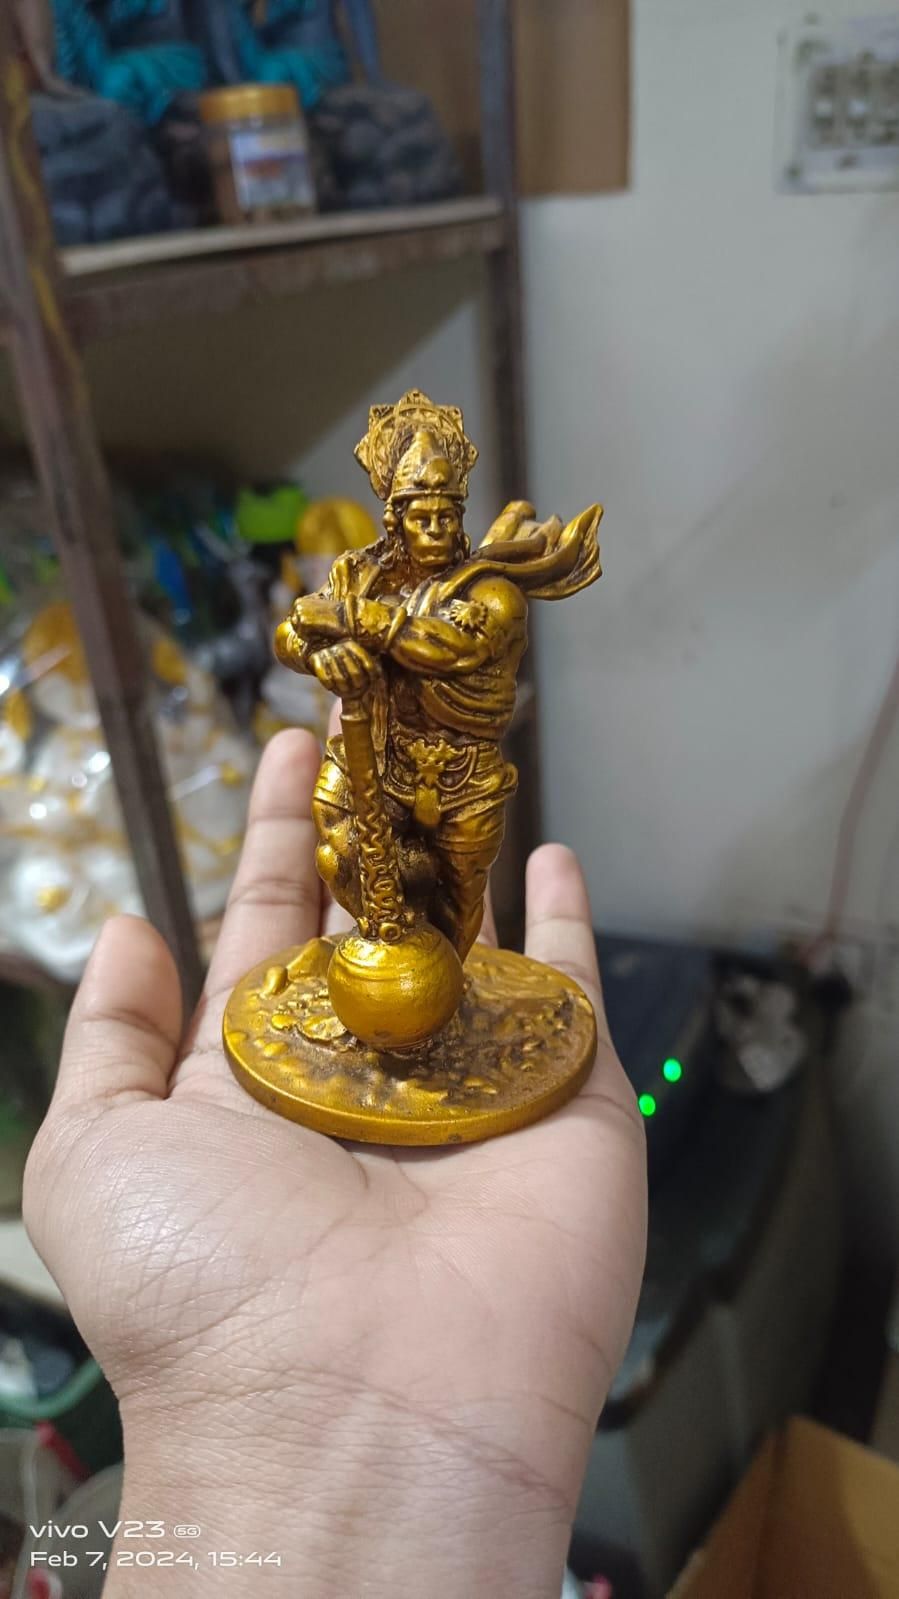 Premium Car Dashboard Resin Bahubali Hanuman Idol Home Decor Item Hanuman Murti Statue for Desk & Gift